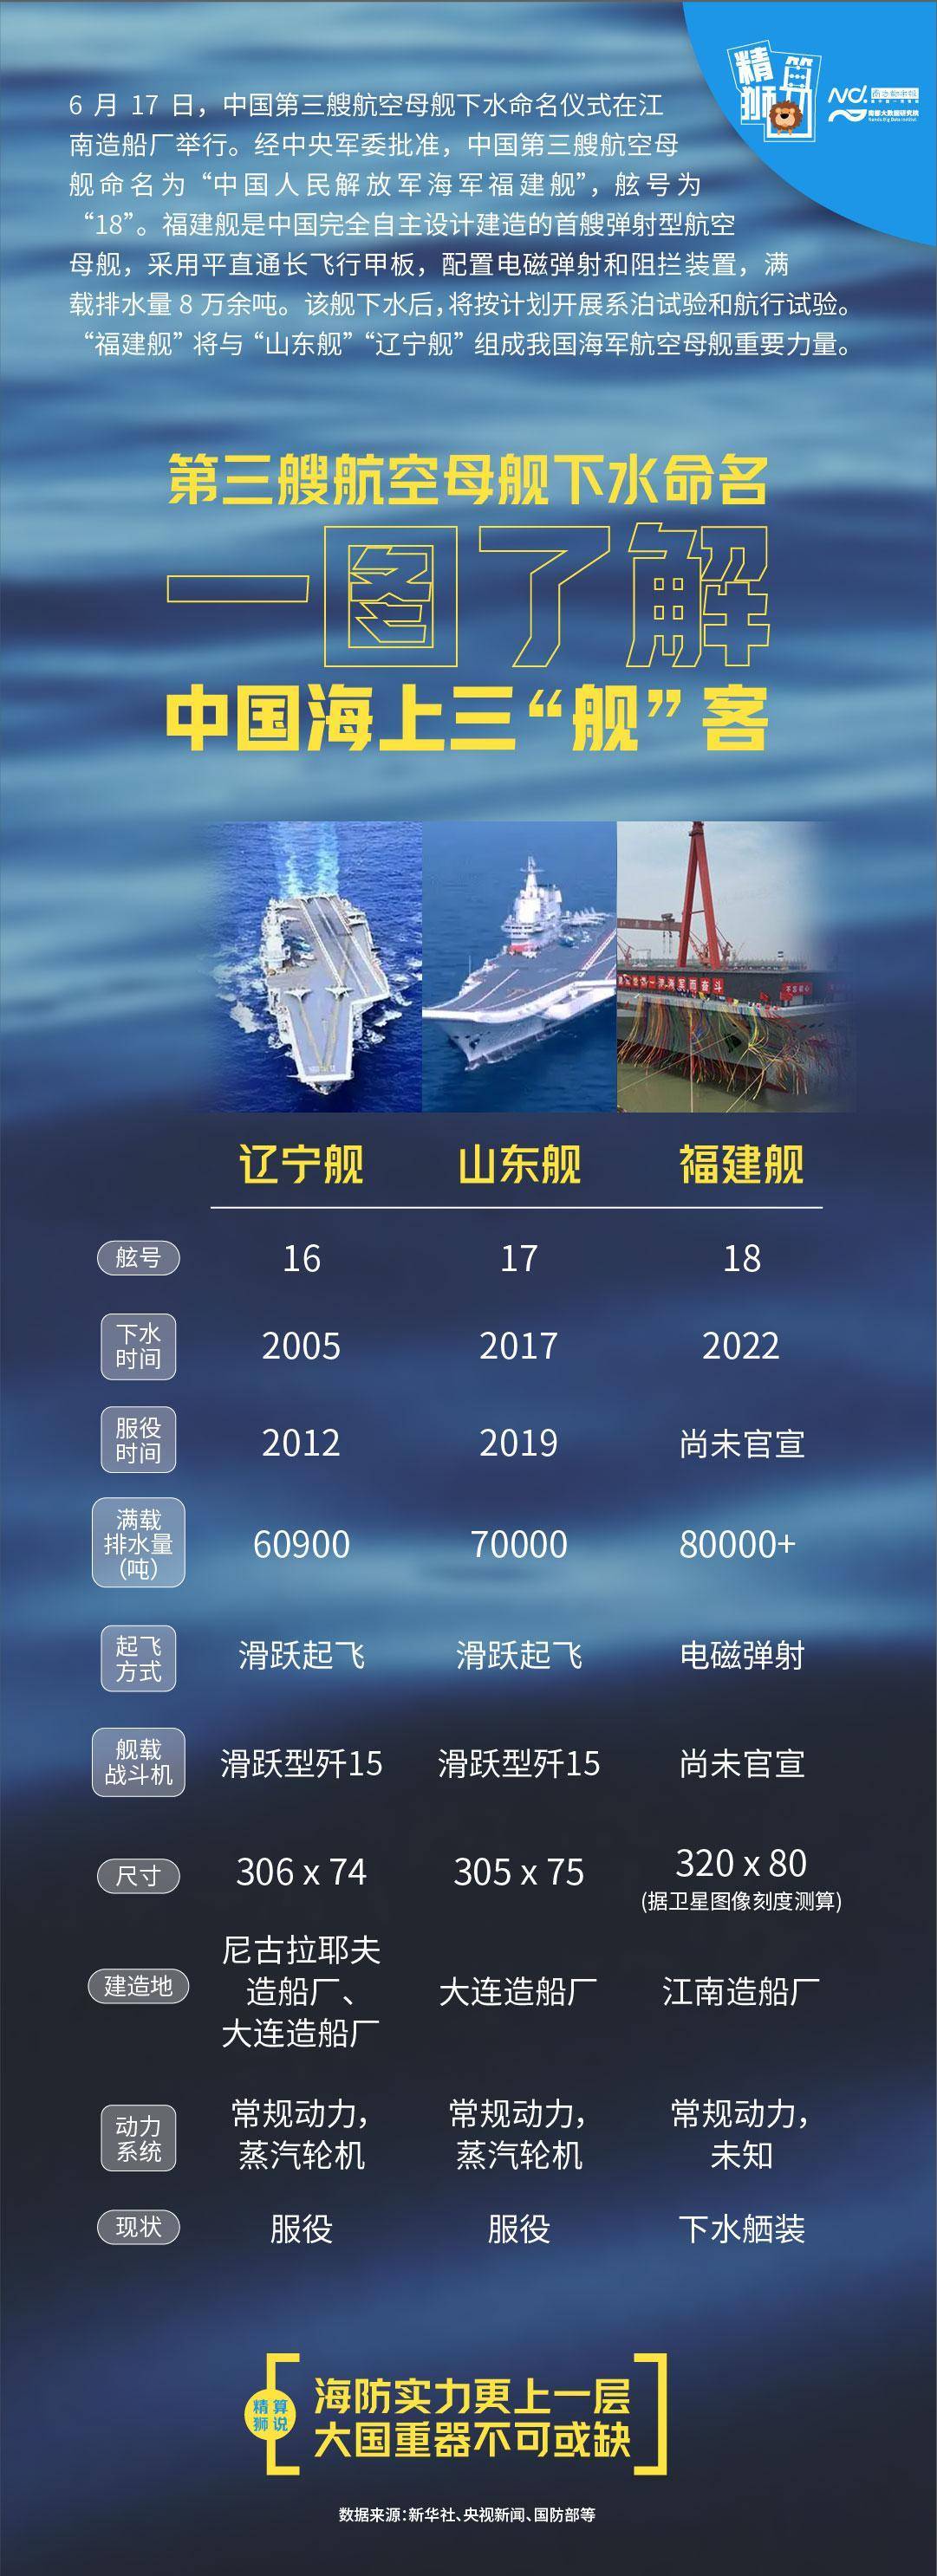 中国第3艘航母“福建舰”下水 第一艘在中国设计和建造的航母 - 国际 - 即时国际